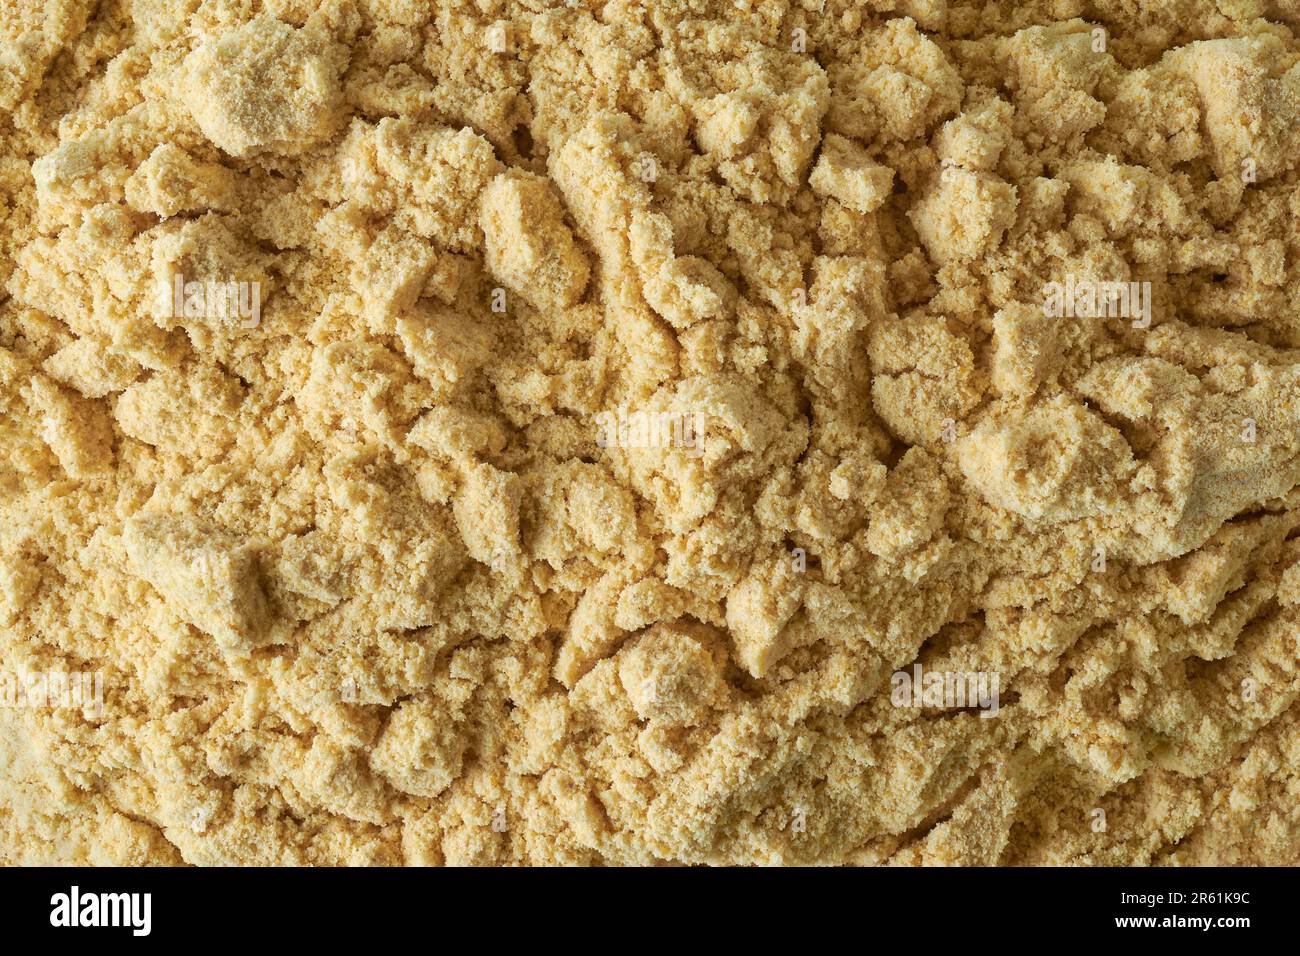 primo piano di farina multigranella, combinazione di diversi cereali che sono stati macinati in polvere fine, nutrizione, più equilibrato e sano Foto Stock